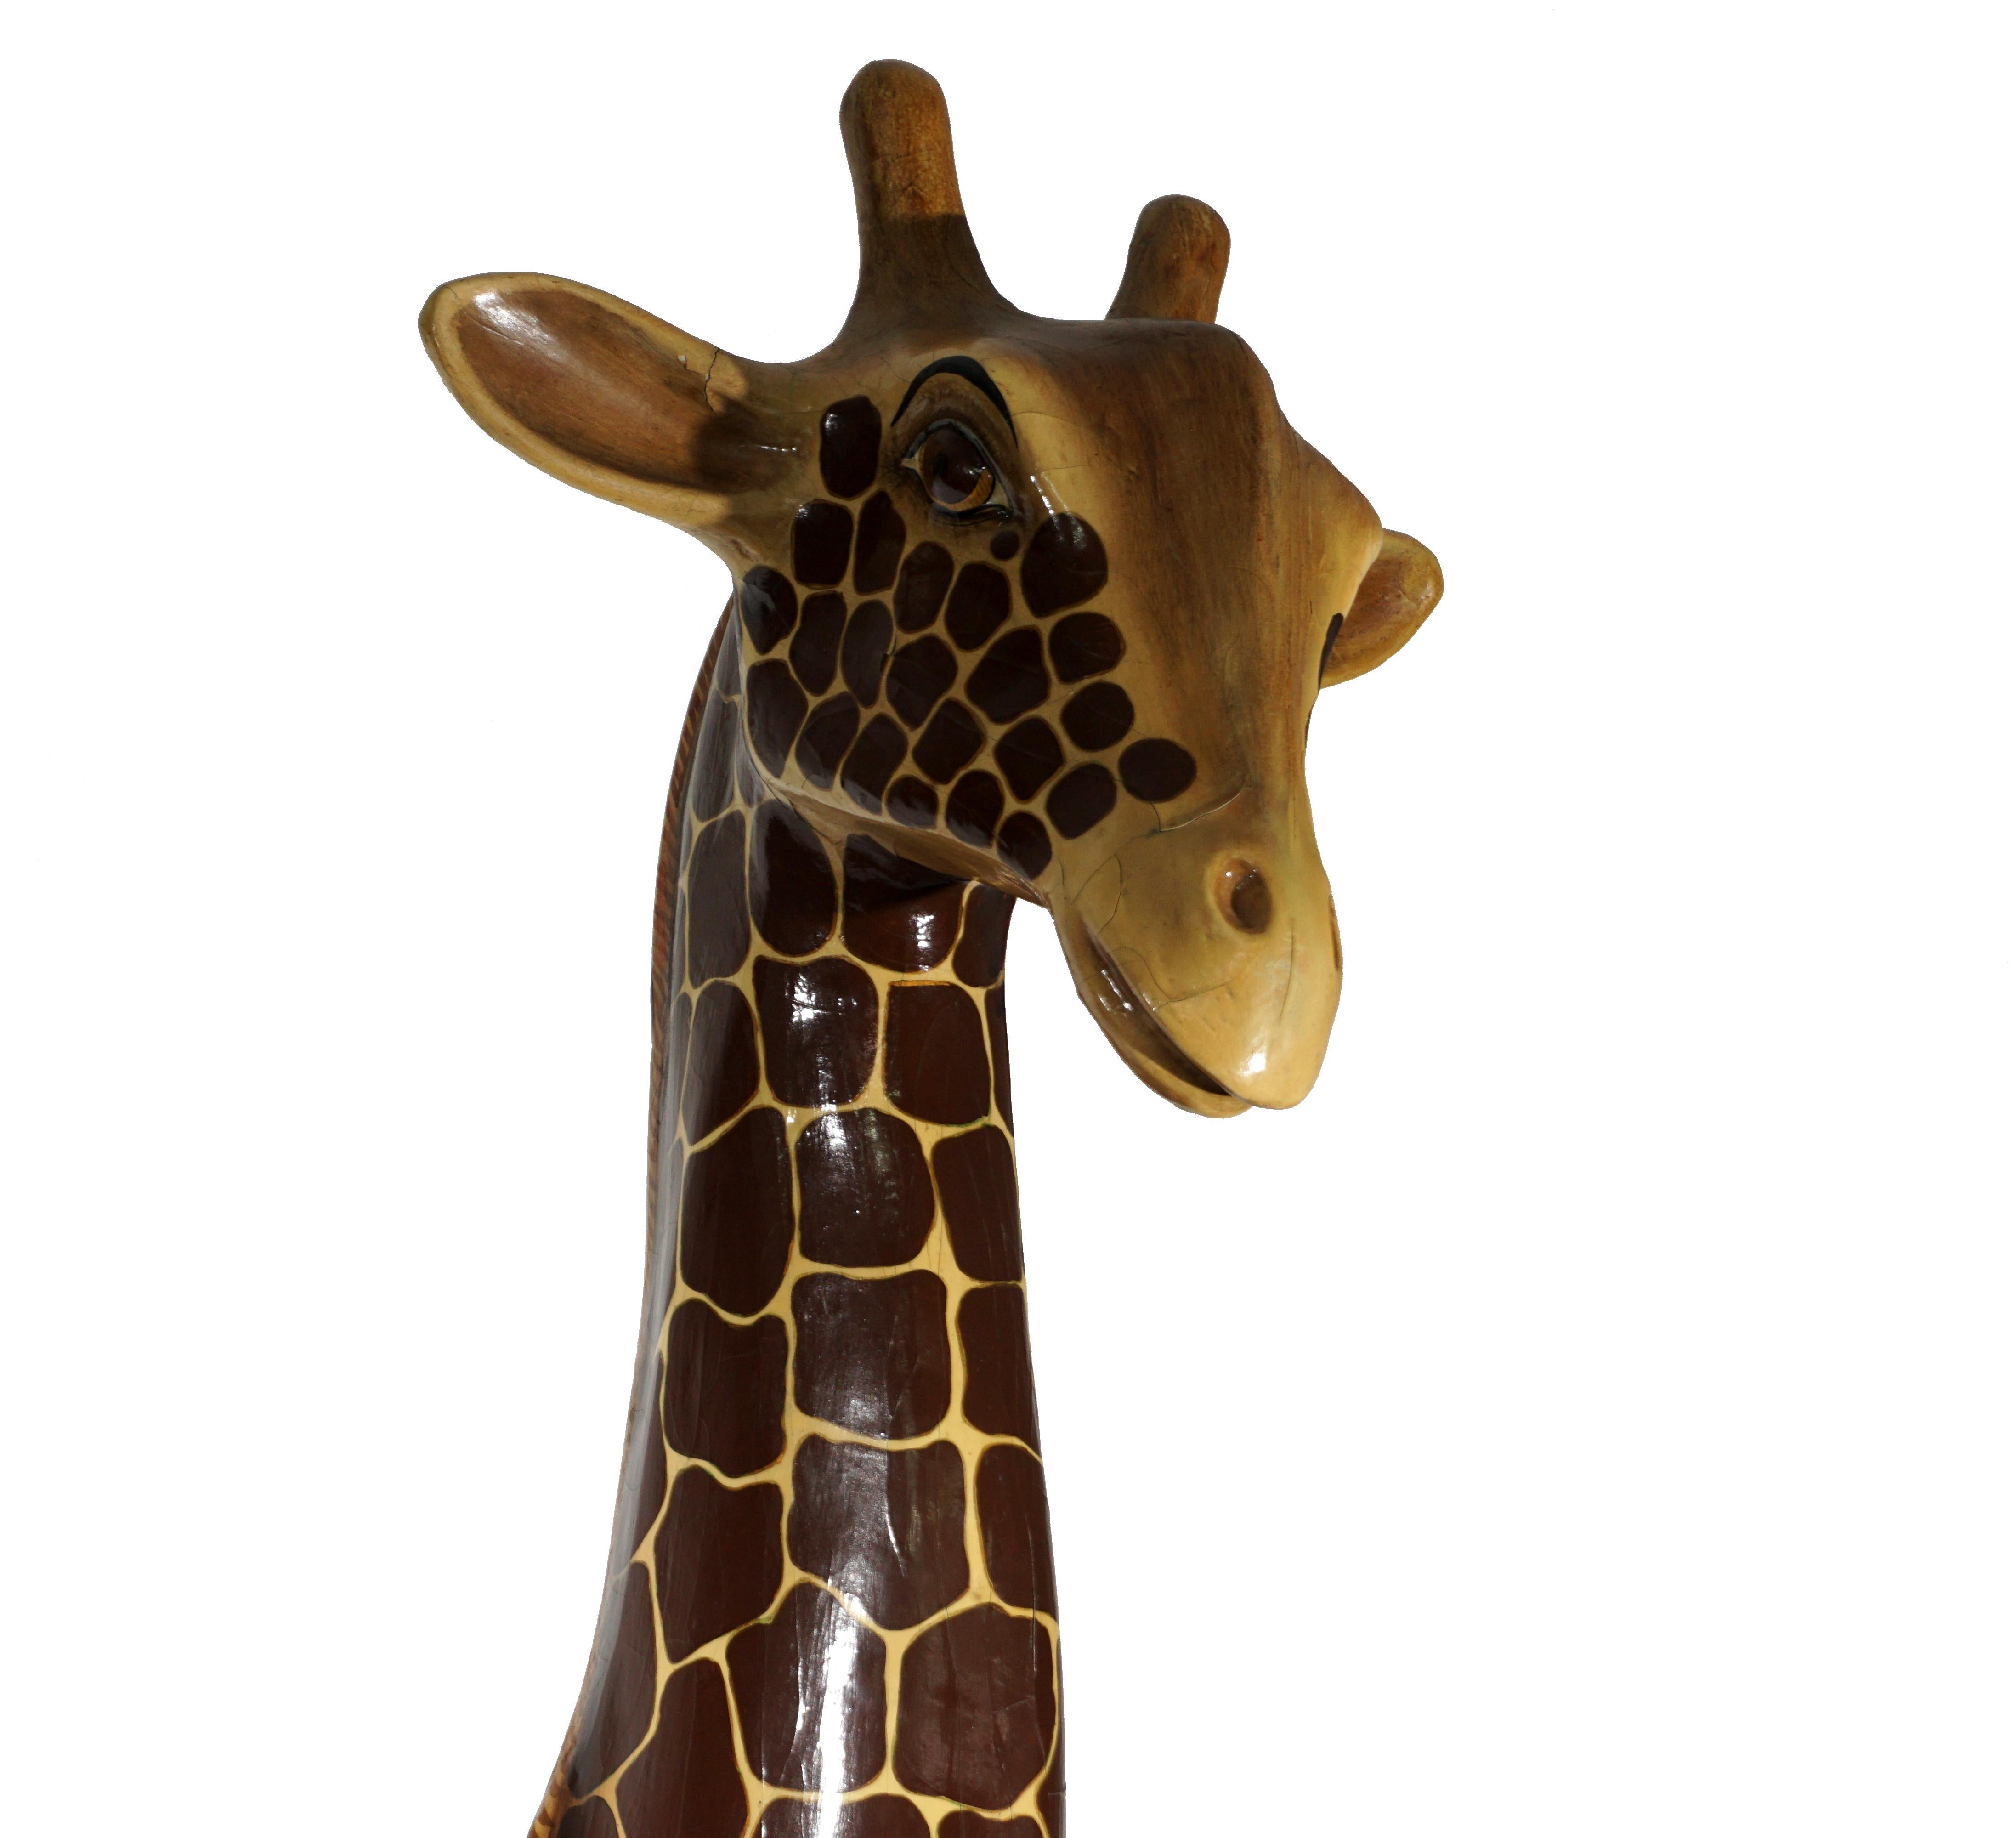 Schöne handgefertigte Pappmaché-Büste einer Giraffe des mexikanischen Künstlers Sergio Bustamante aus den 1970er Jahren.
Insgesamt guter Zustand, die Rissbildung ist normal mit dem Alter und ist gut integriert.